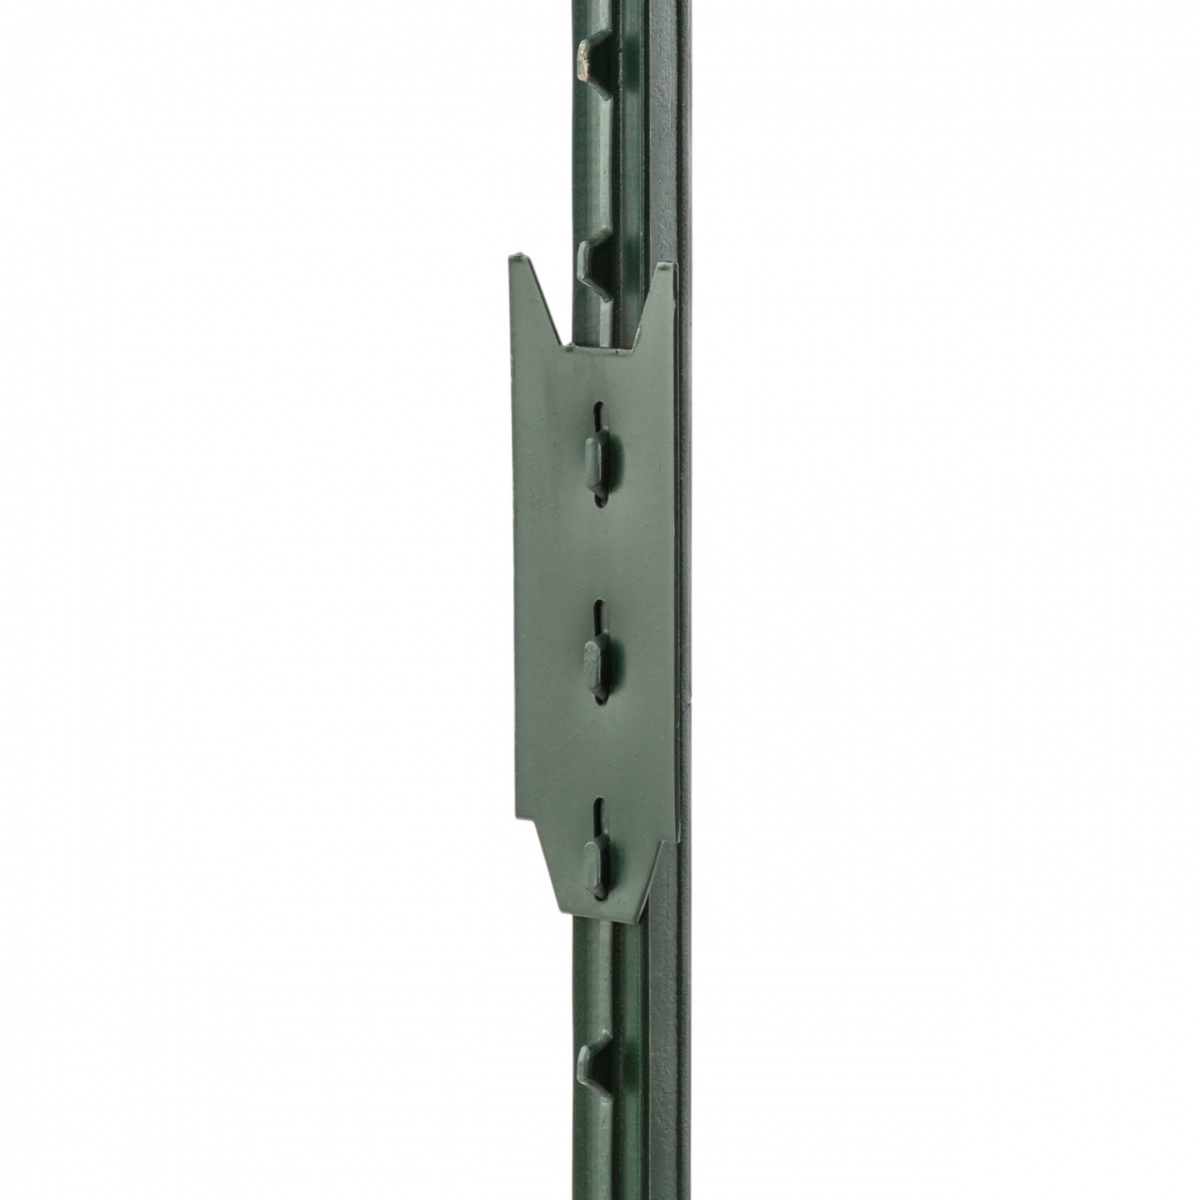 T-post fém kerítésoszlop, 182 cm